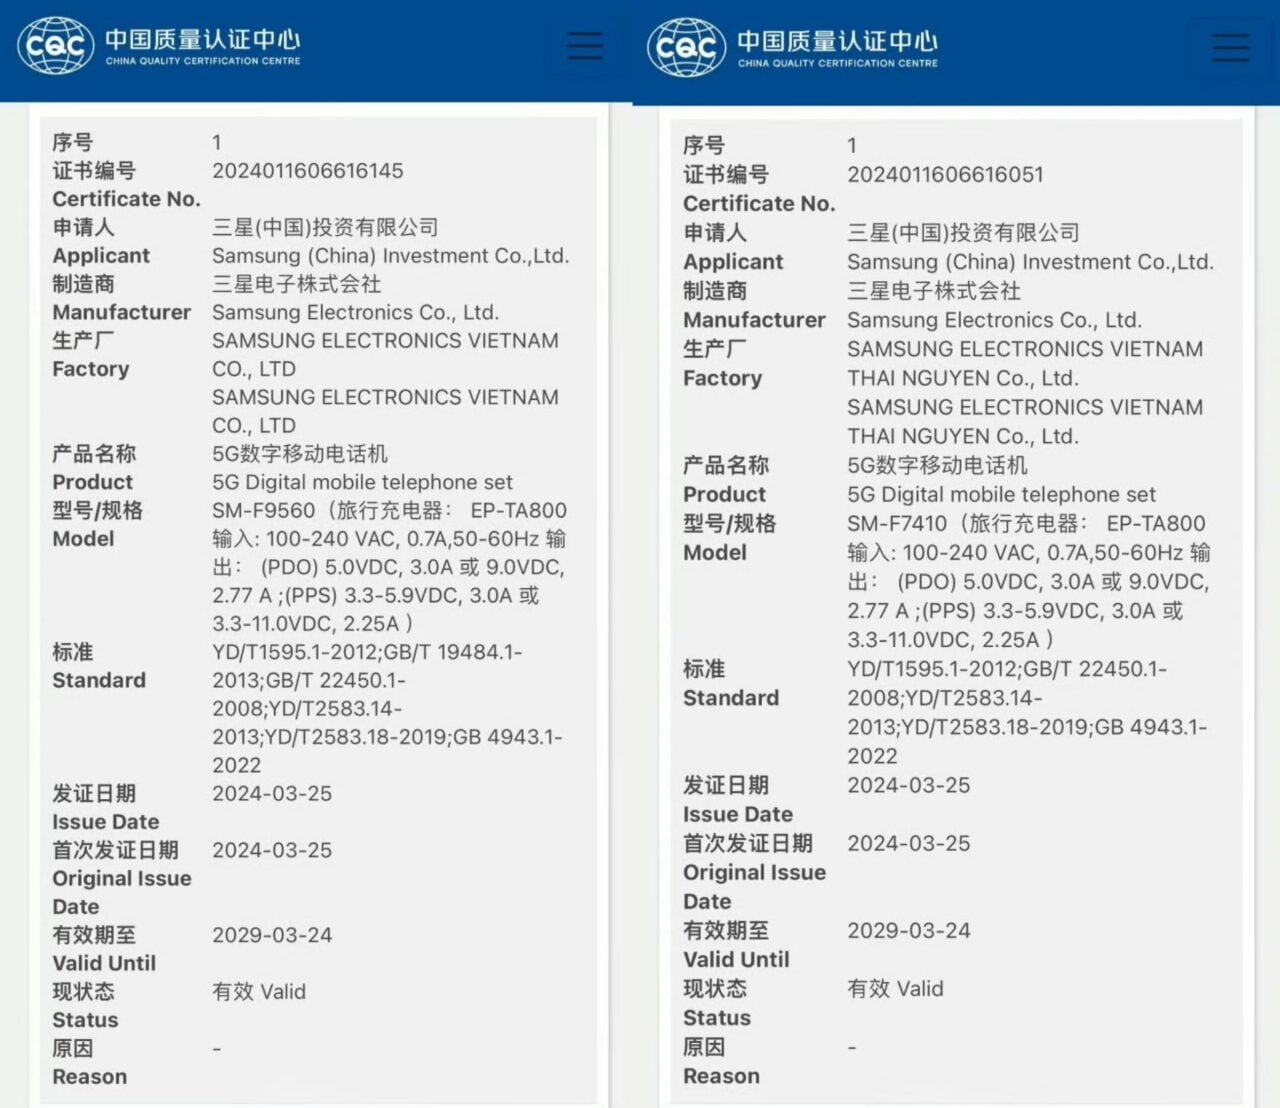 Zdjęcie dwóch certyfikatów China Quality Certification Centre z tekstem w języku chińskim, opisujących parametry i informacje o certyfikacji dla dwóch różnych modeli telefonów komórkowych marki Samsung produkowanych w Wietnamie.